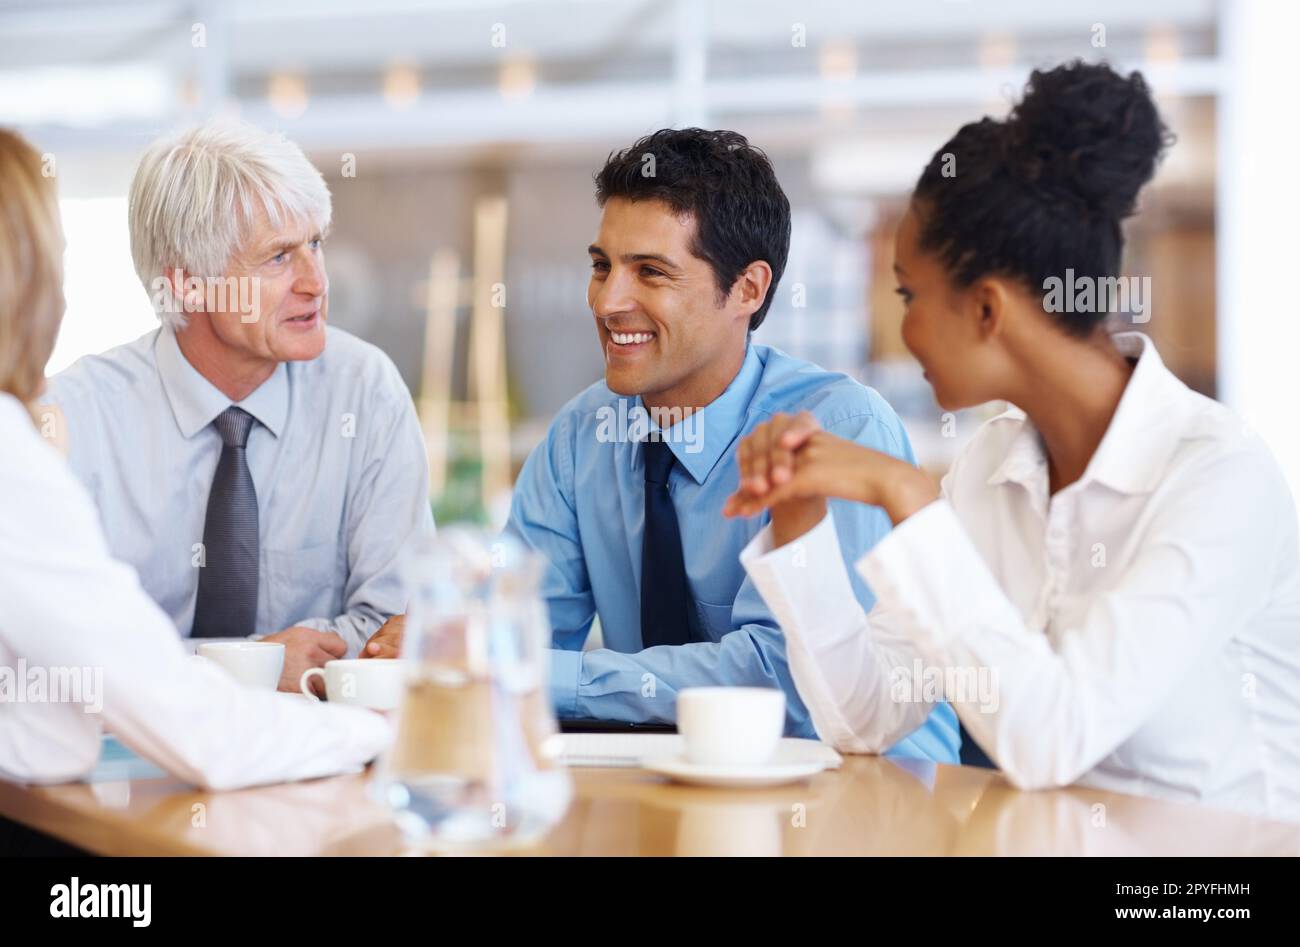 Il team aziendale ha avuto una conversazione felice. Ritratto del team aziendale multietnico che ha avuto una conversazione felice nella sala conferenze. Foto Stock